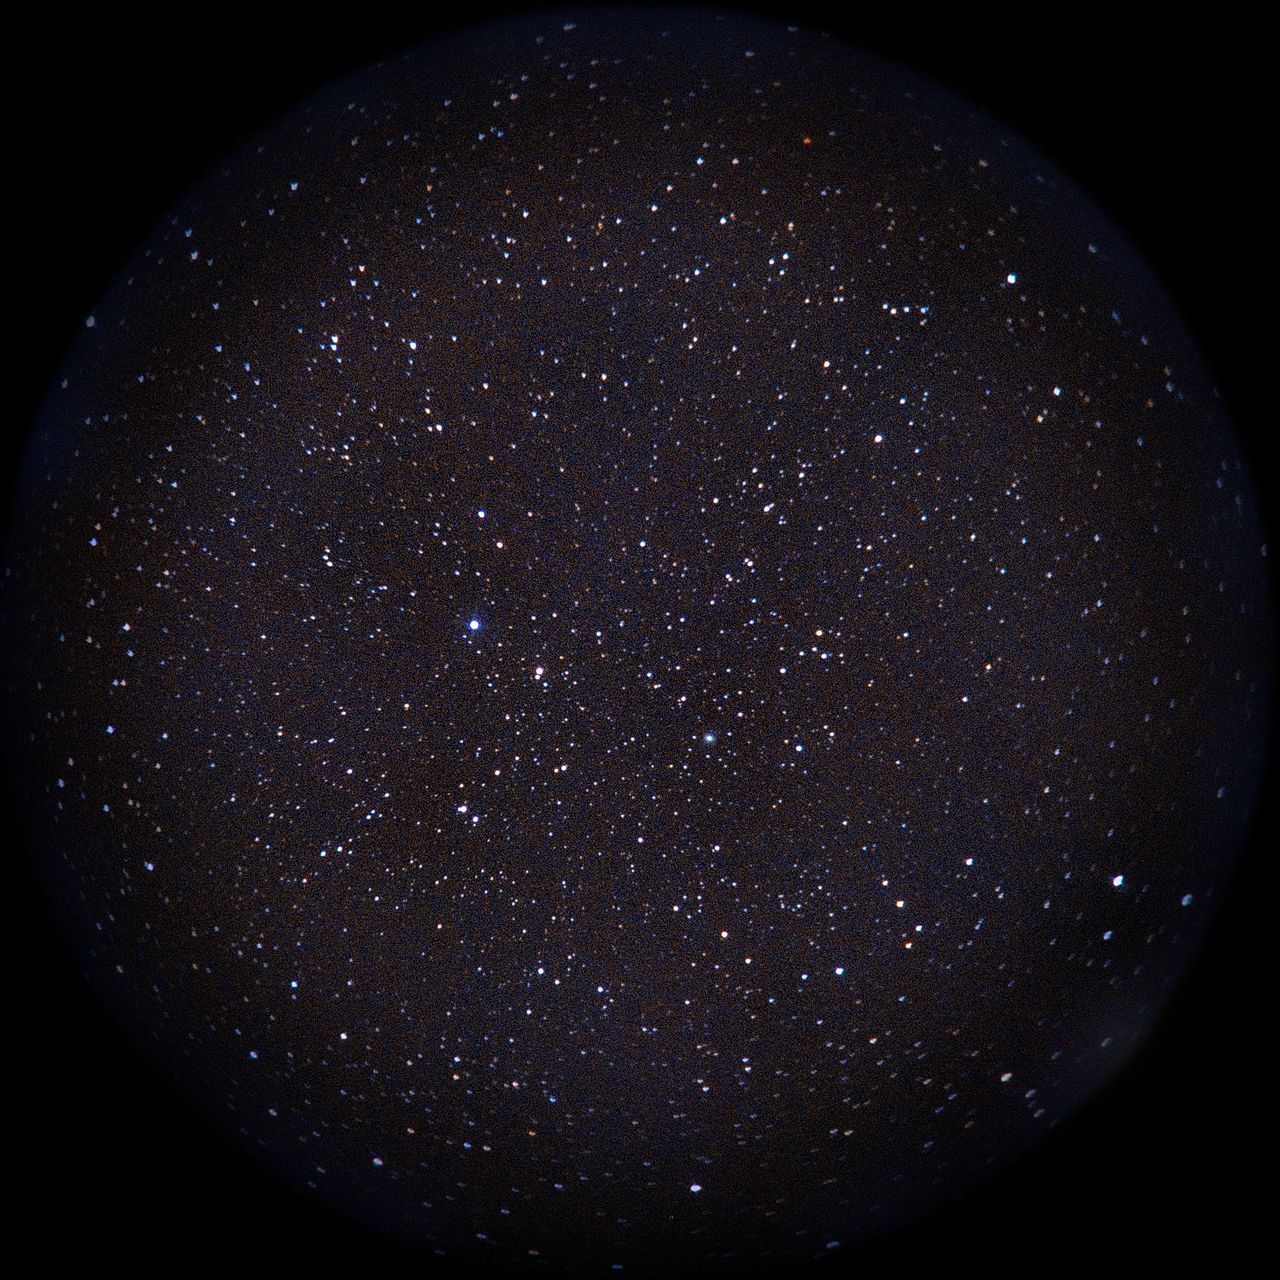 Image of NGC2346